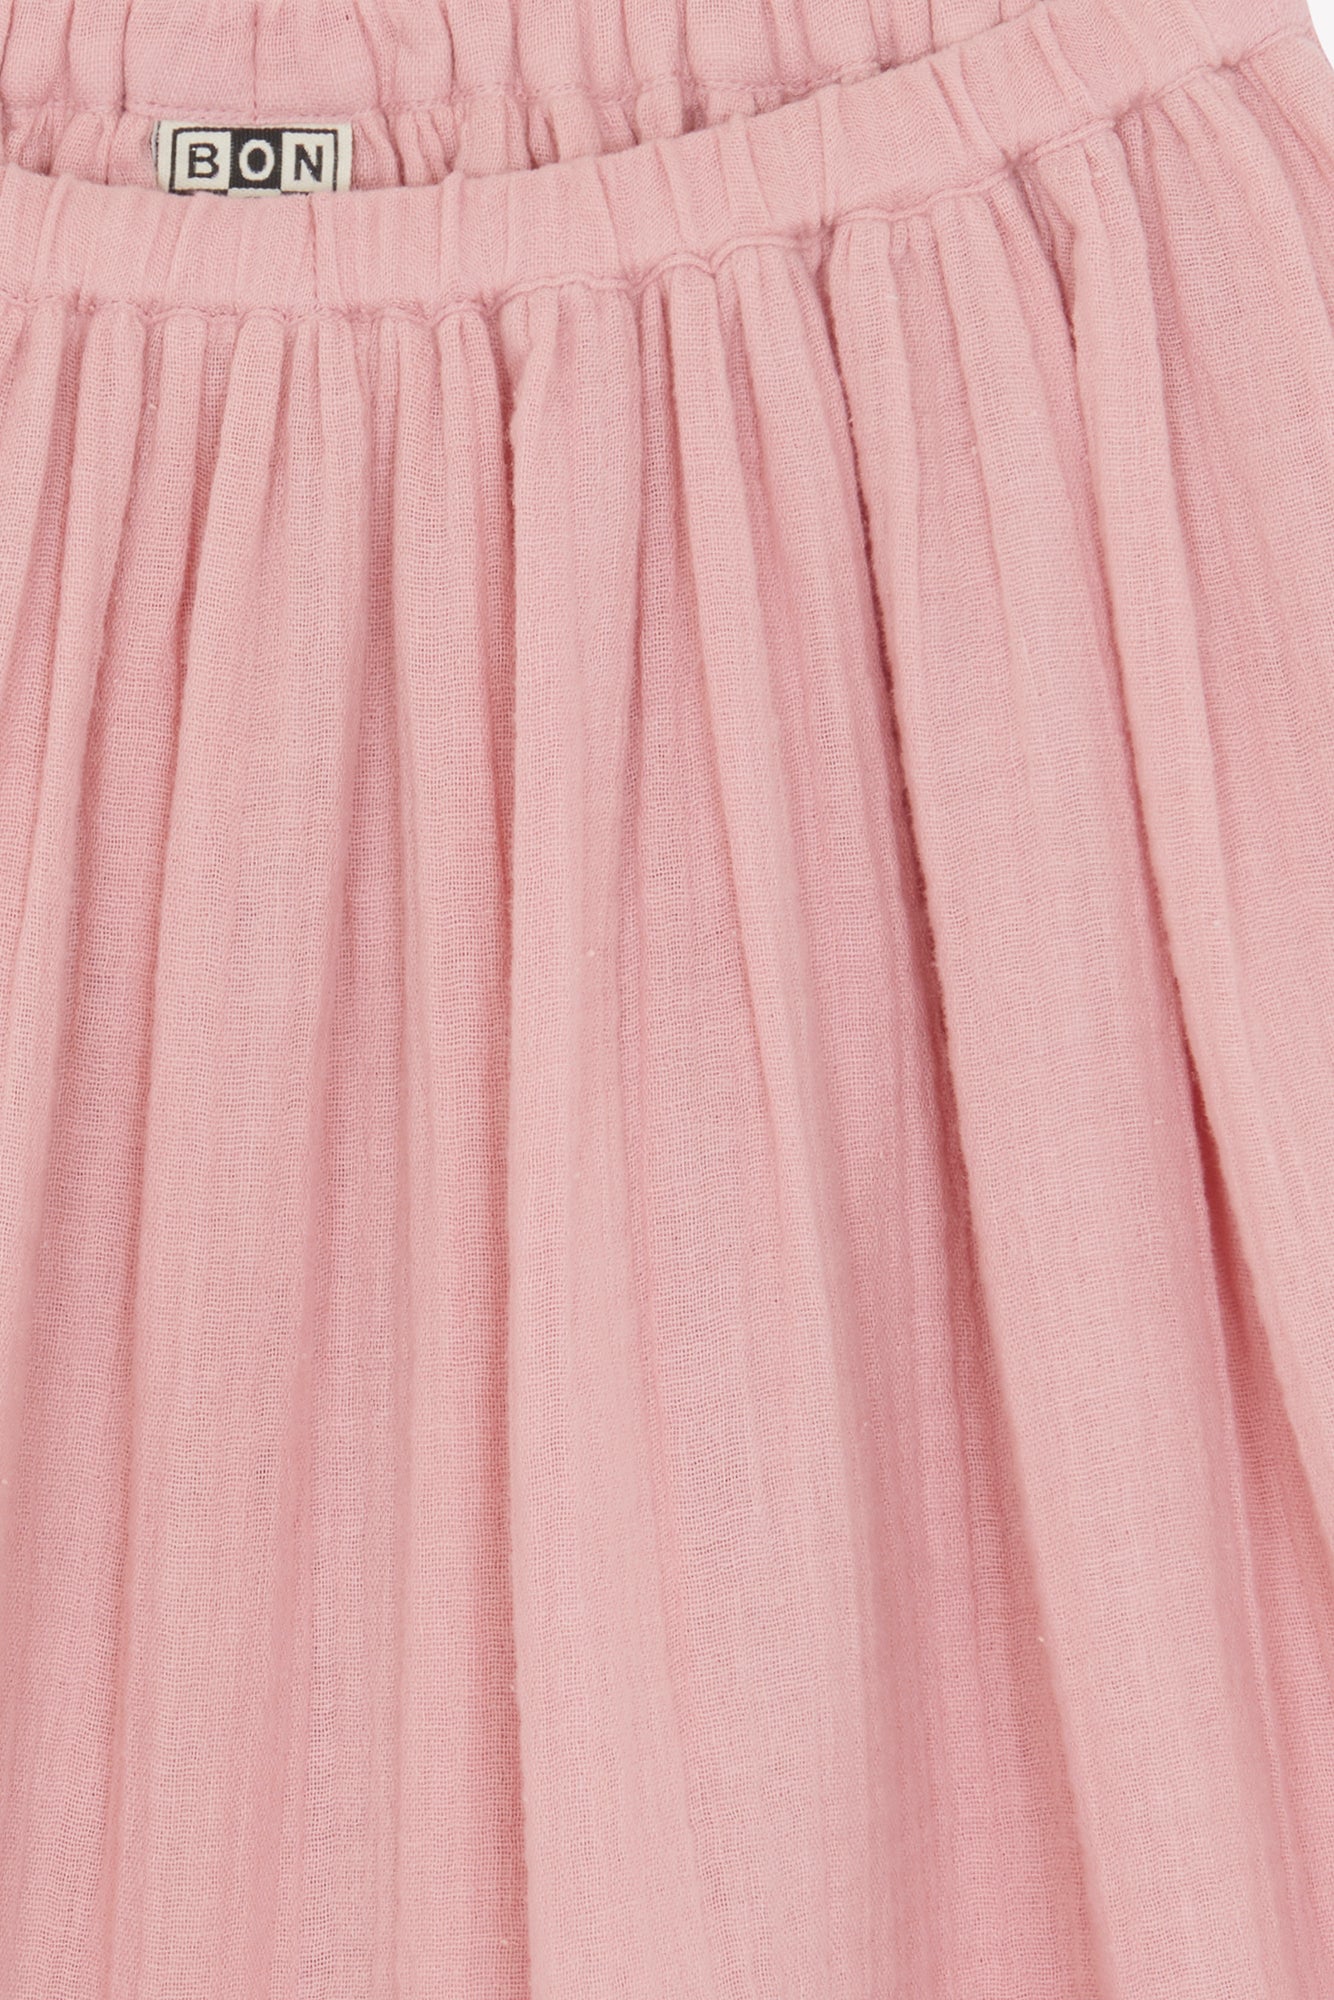 Skirt Raspberry Pink GOTS certified organic cotton gauze